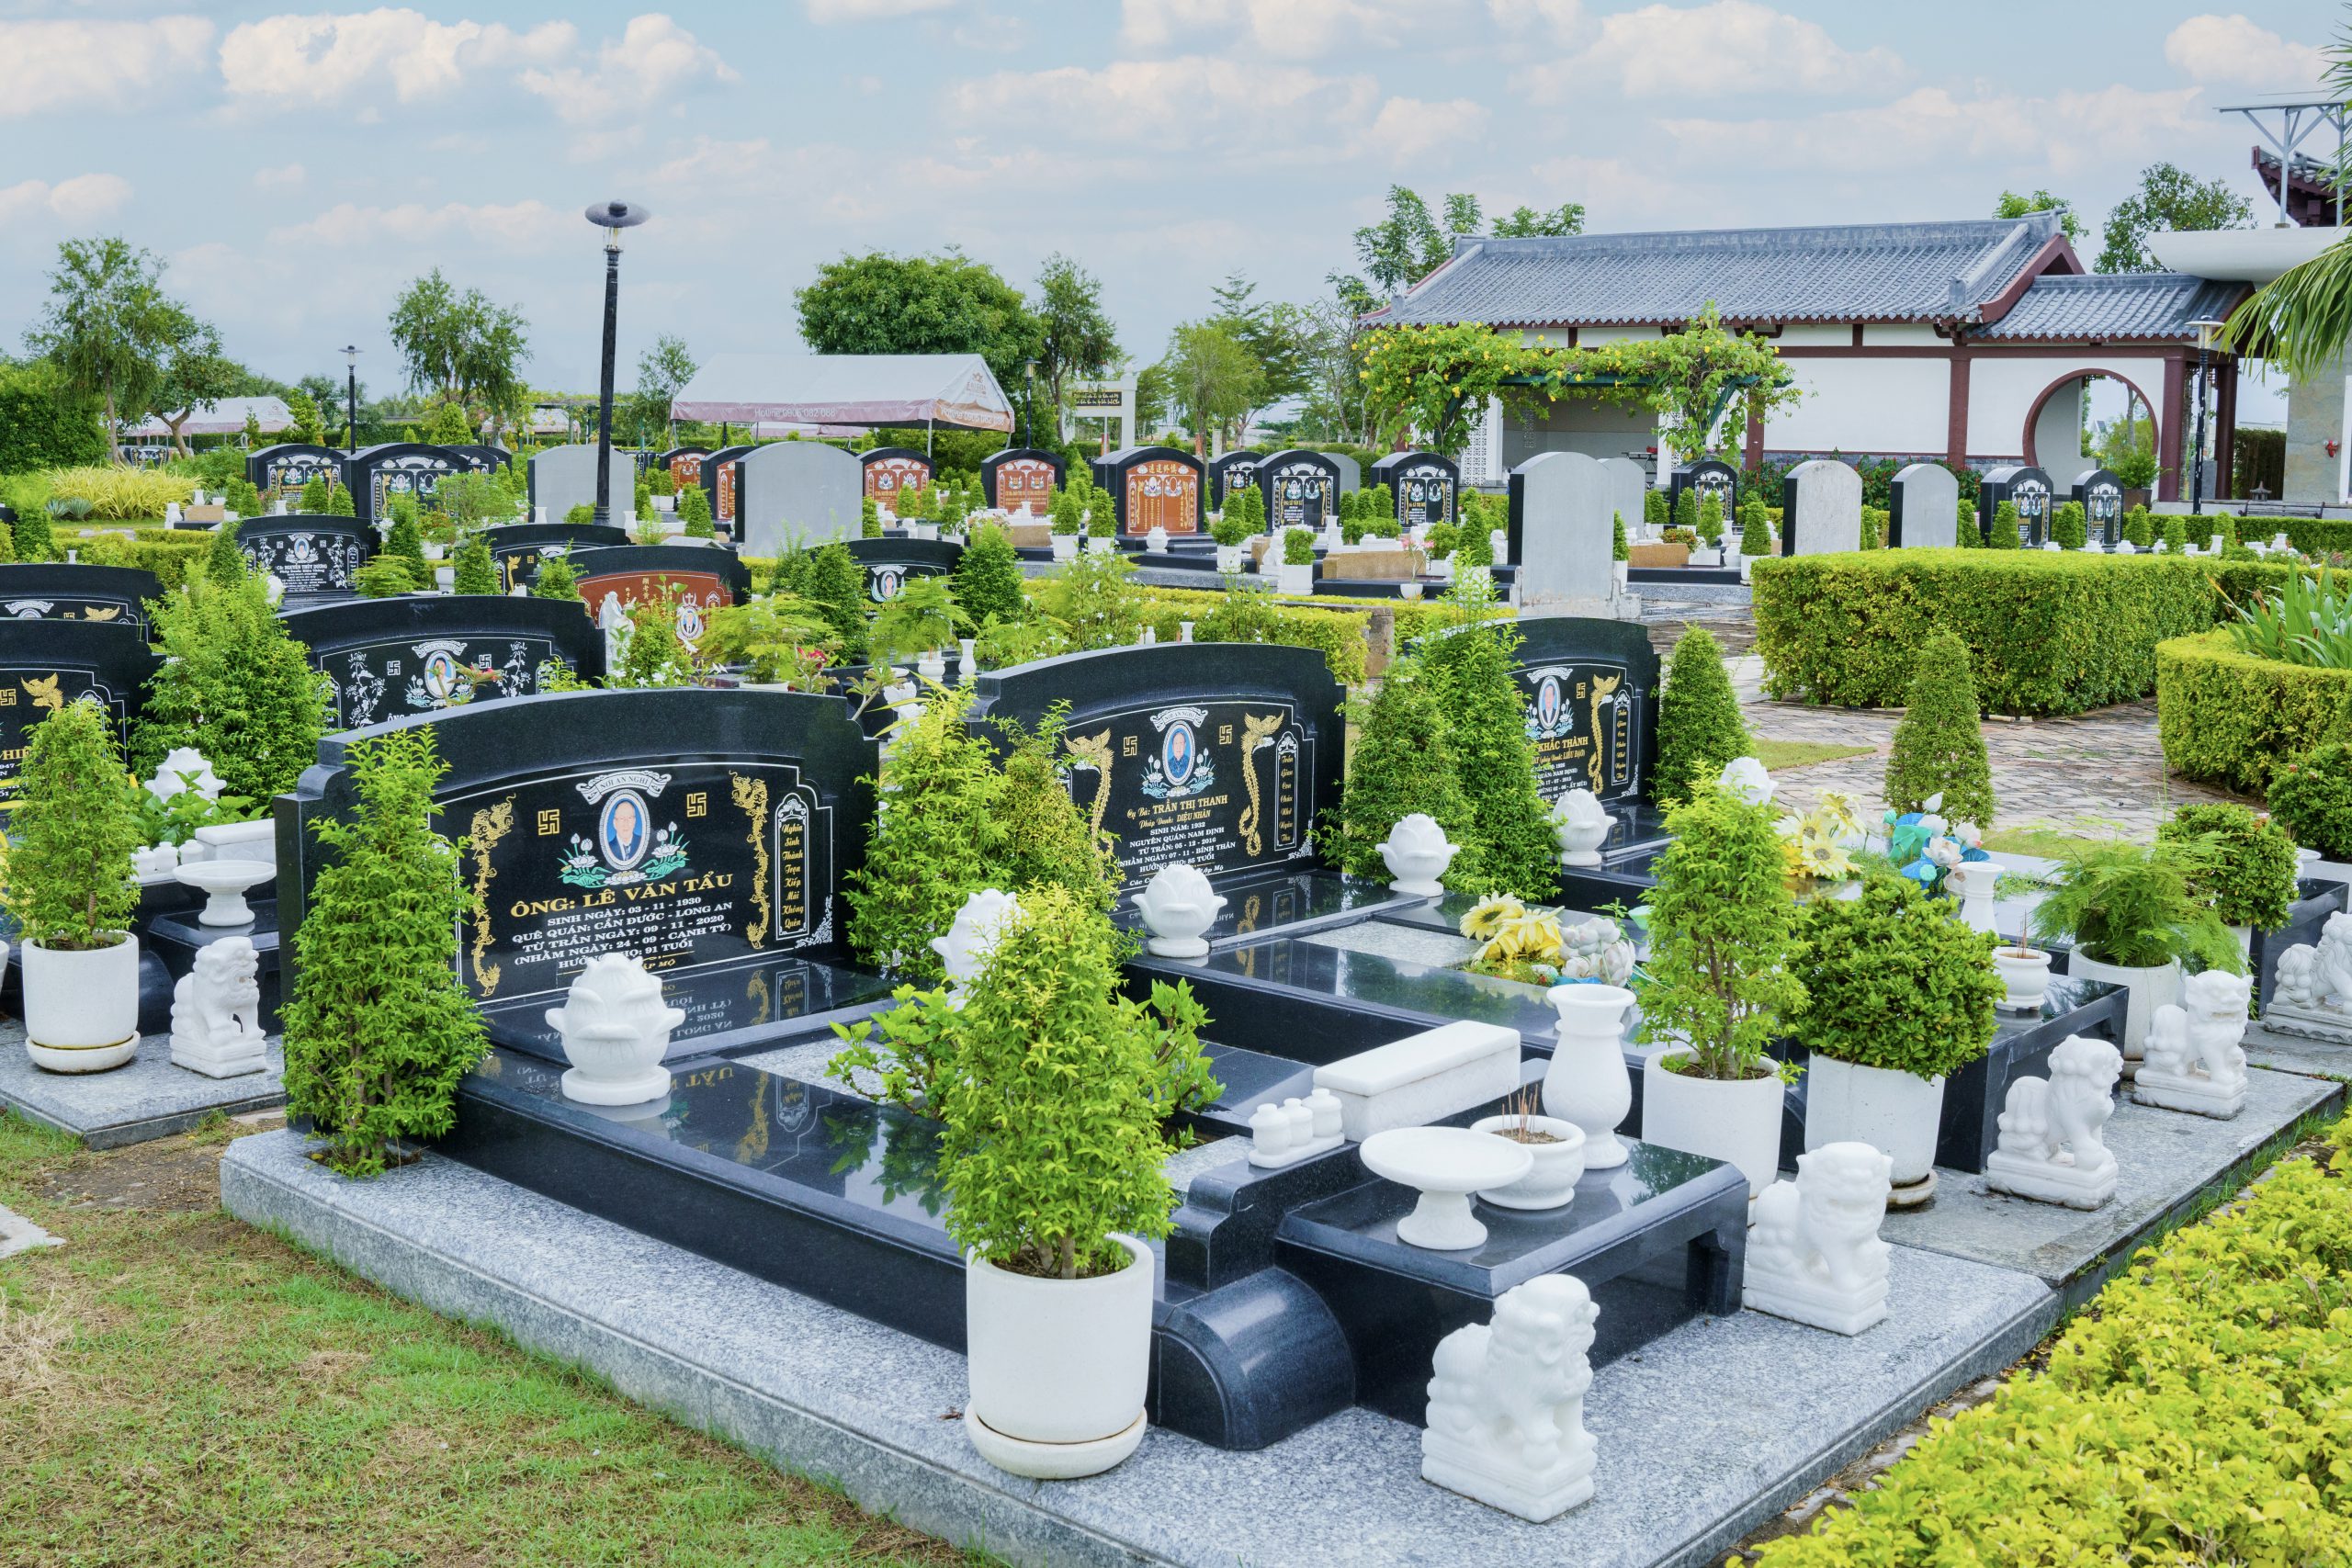 9 Điều đại kỵ khi lựa chọn đất chôn cất cho người quá cố